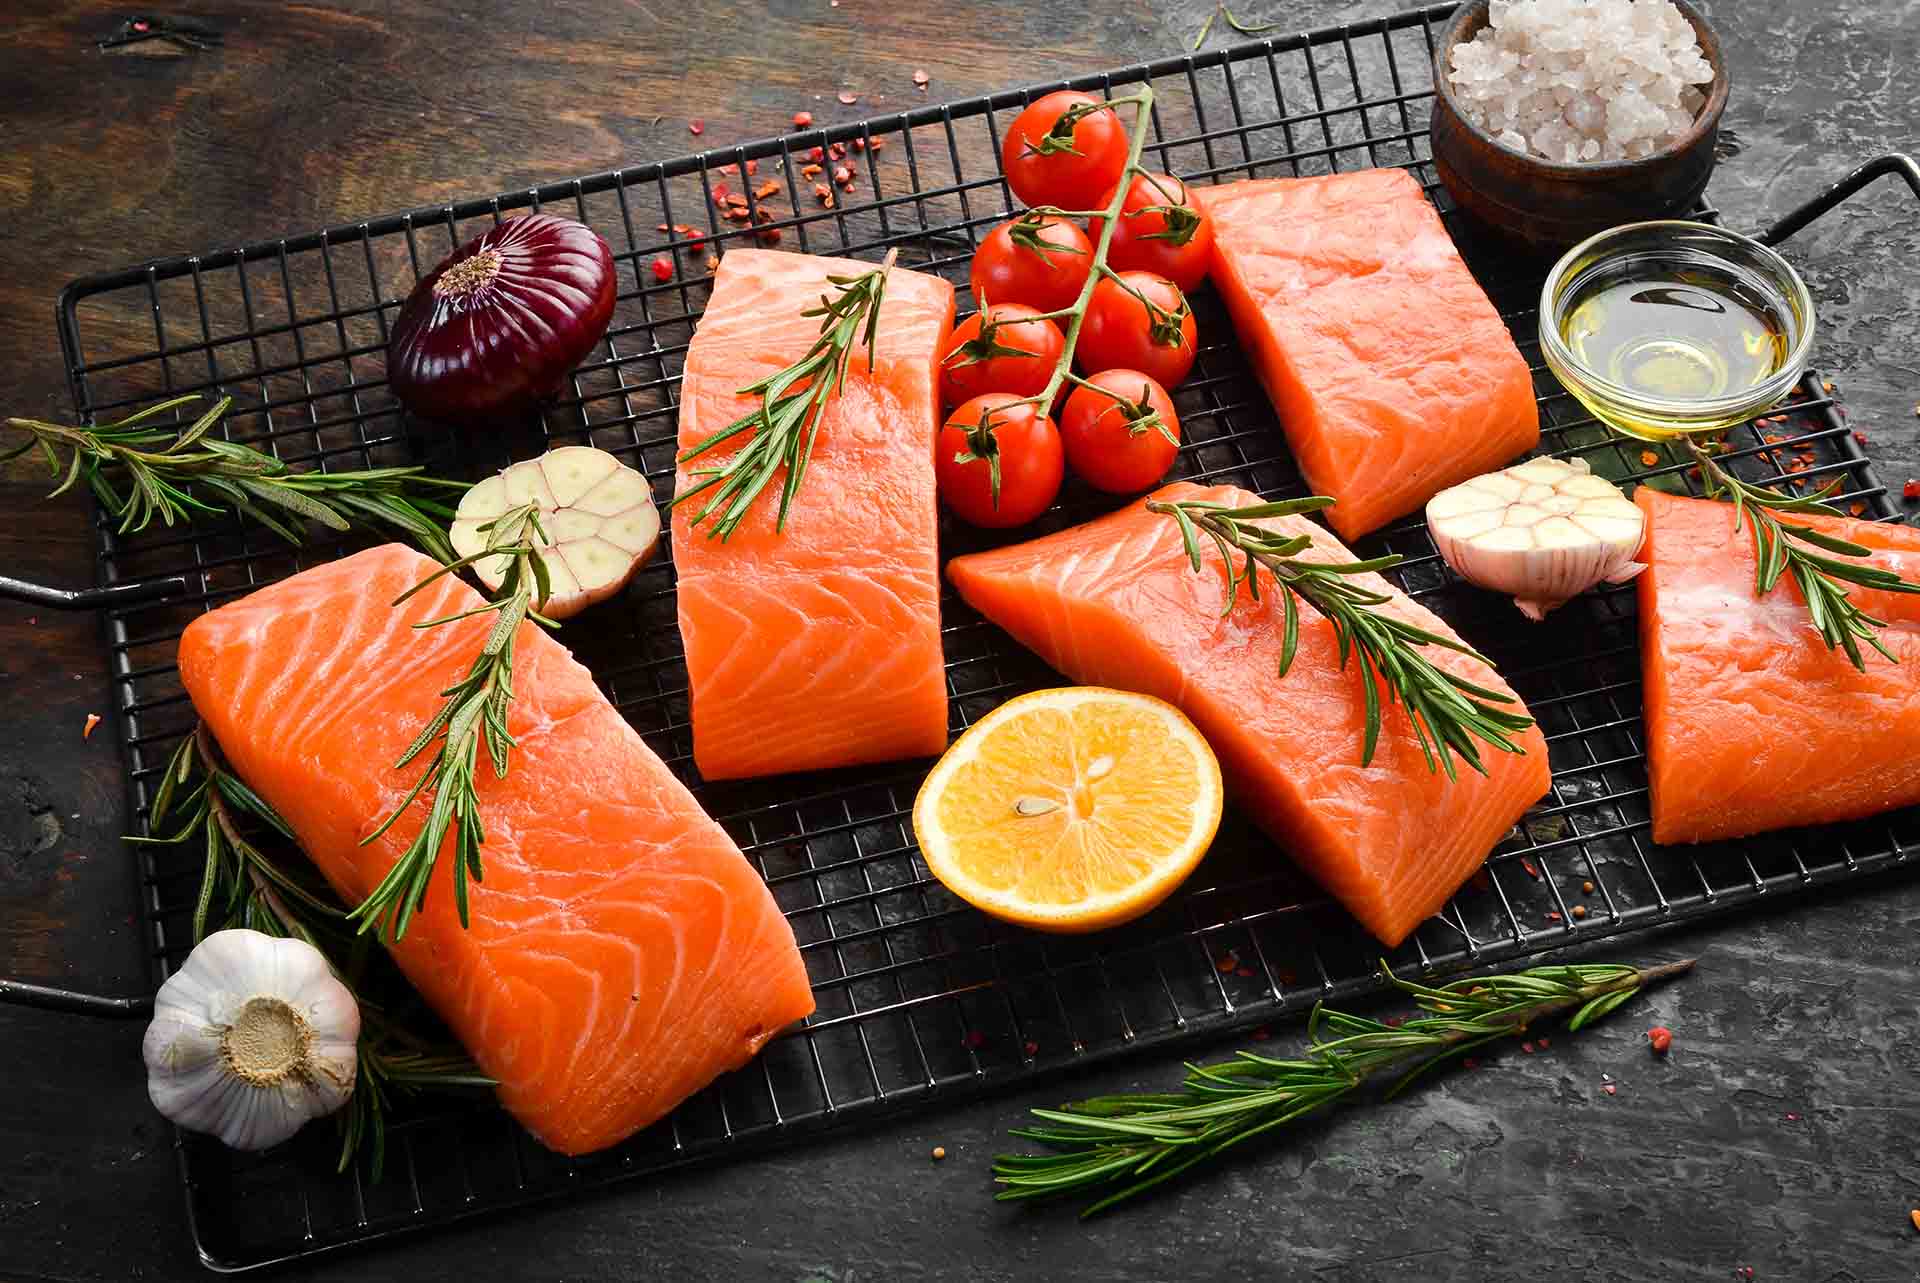 Çiğ Balık ve Et Yemek Gerçekten Ne Kadar Kötü? - Altun Blog